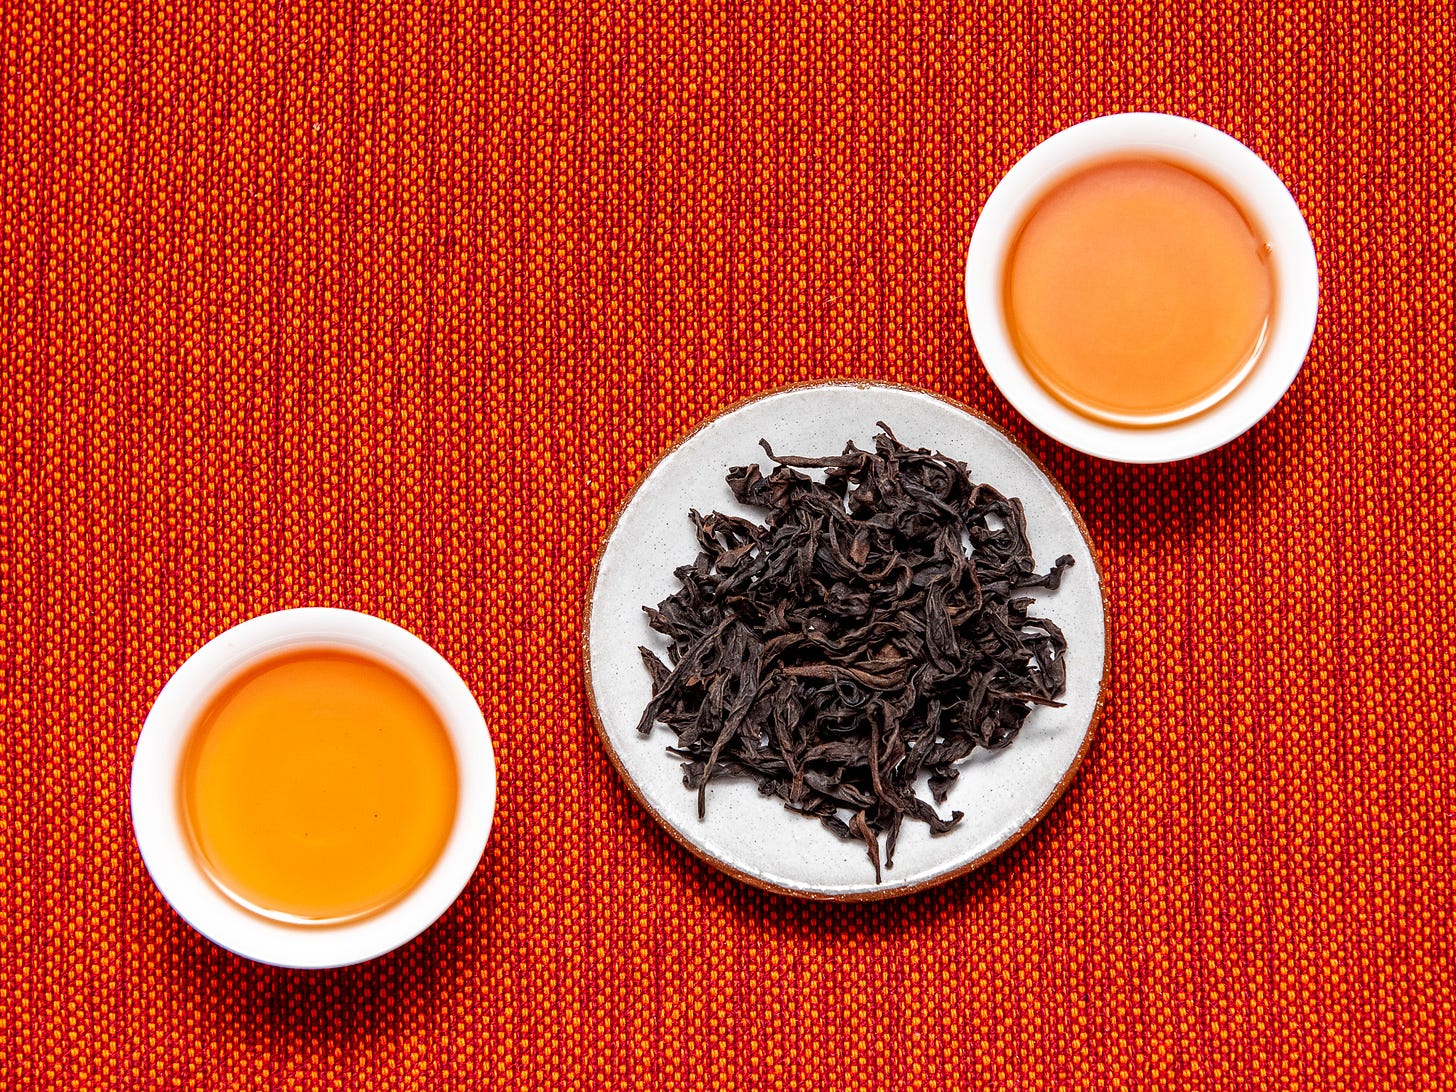 ID: Rou gui tea leaves and brewed tea